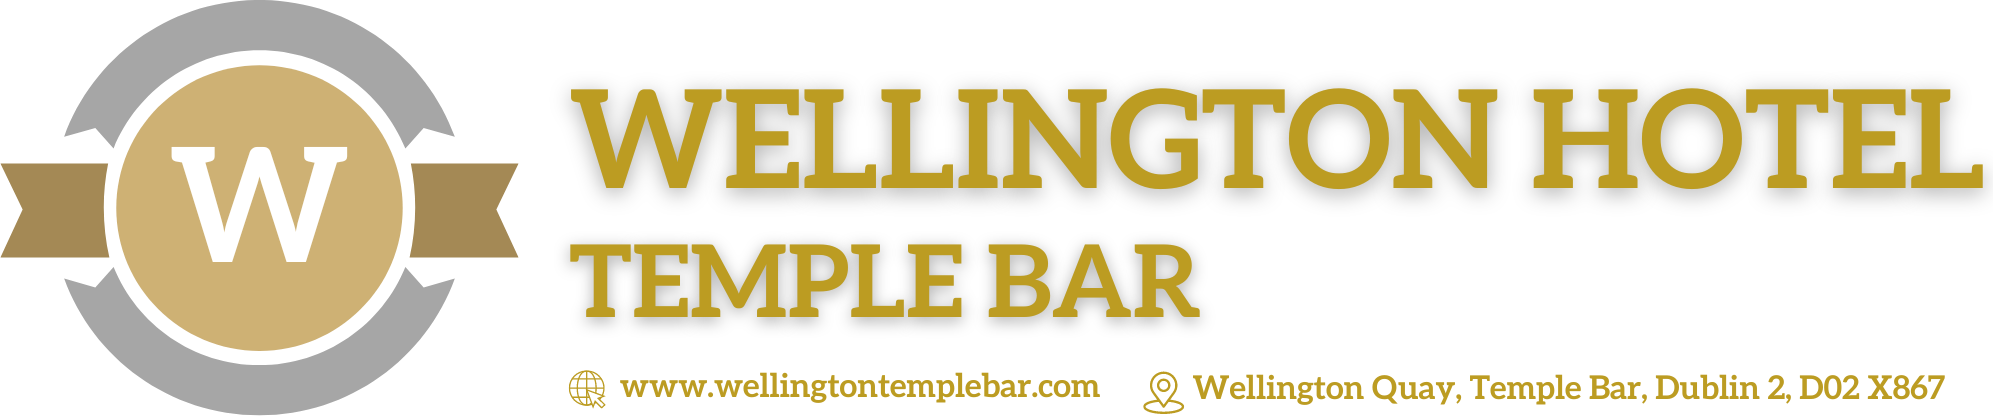 Hình ảnh có nhãn Wellington Hotel Temple Bar Logo